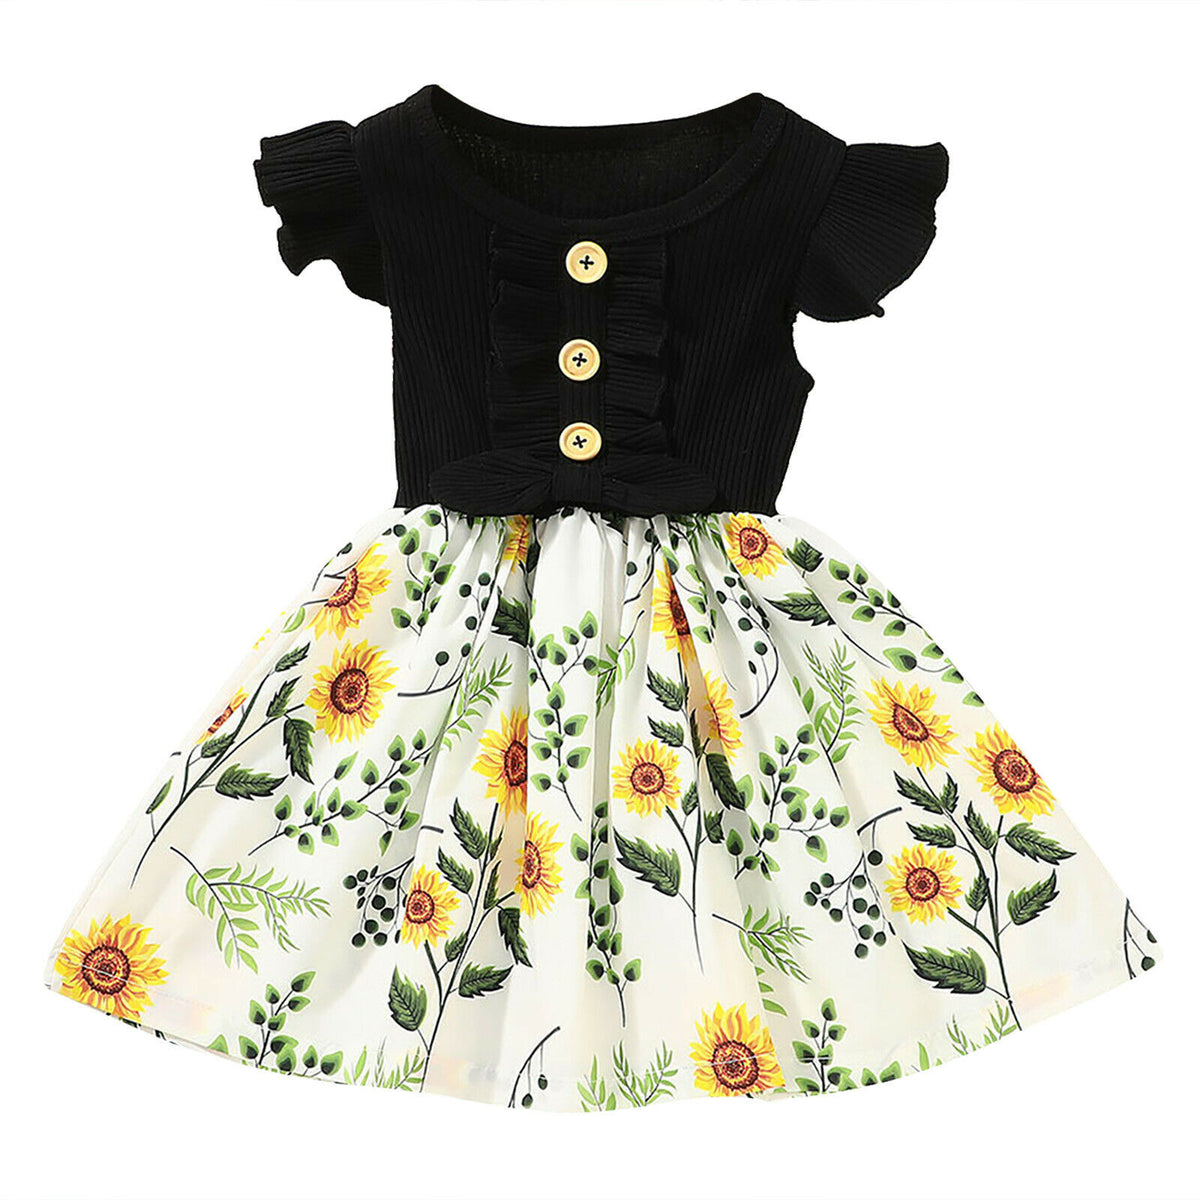 Toddler girl summer dresses - Black– Fabulous Bargains Galore